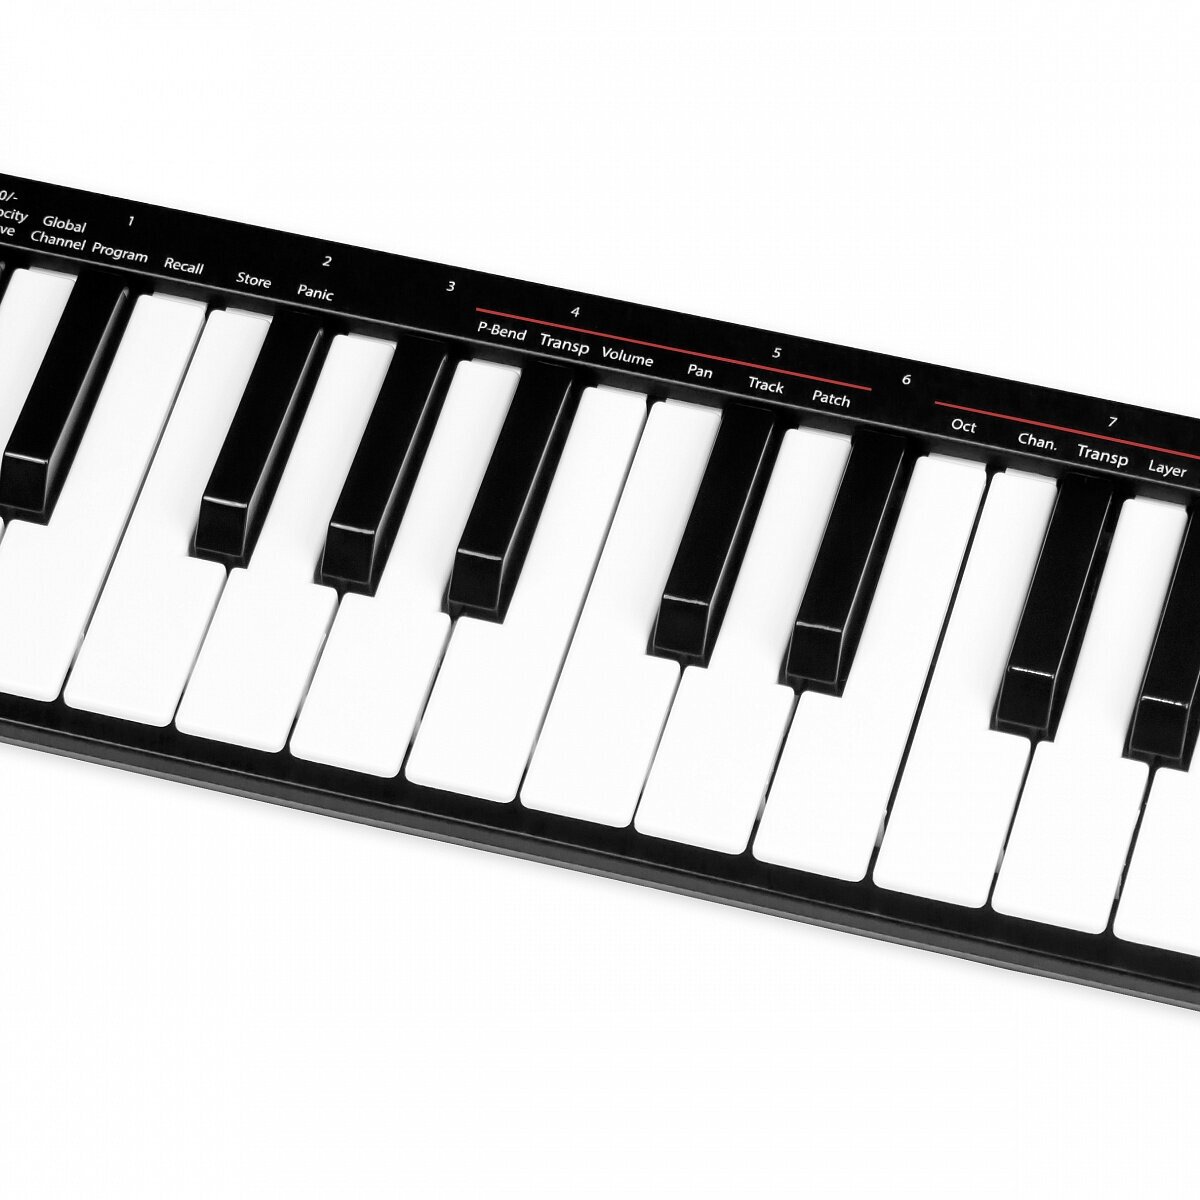 MIDI-клавиатура Nektar - фото №4